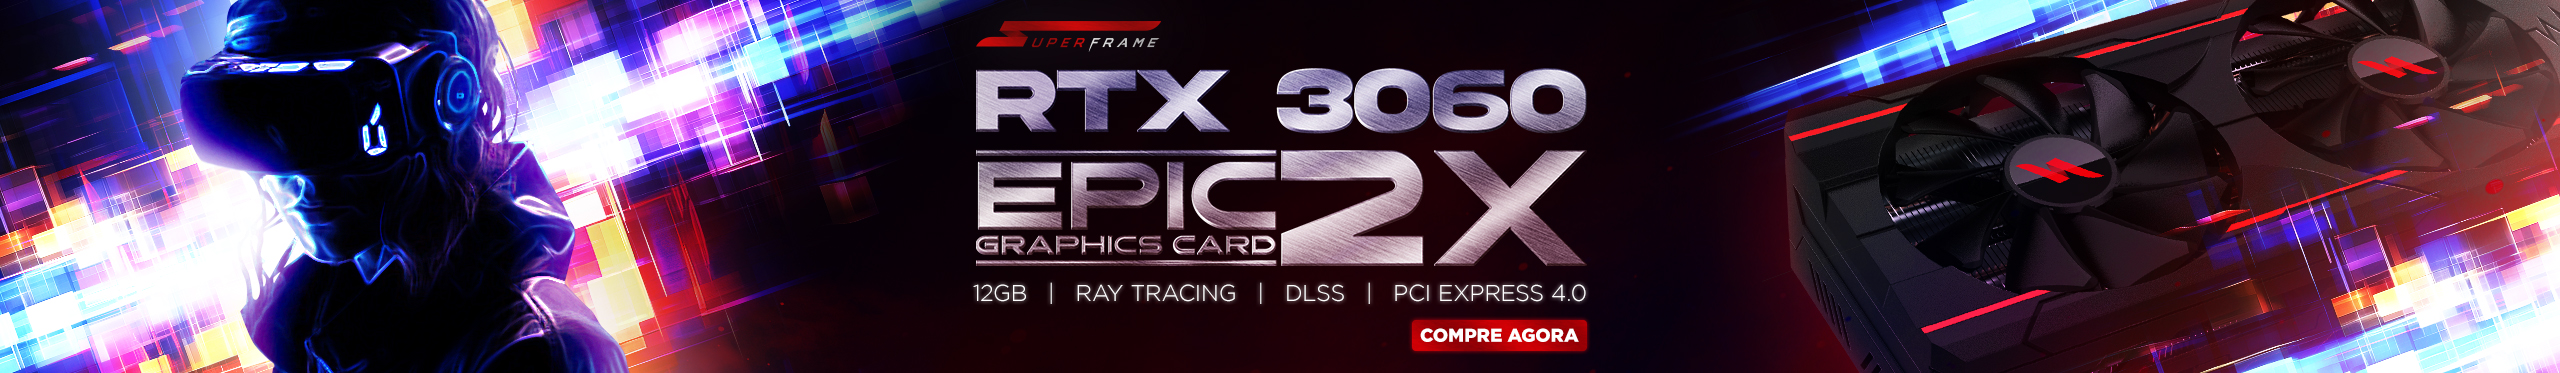 Placa de Vídeo SuperFrame GeForce RTX 3060 EPIC 2X | Tenha mais poder!